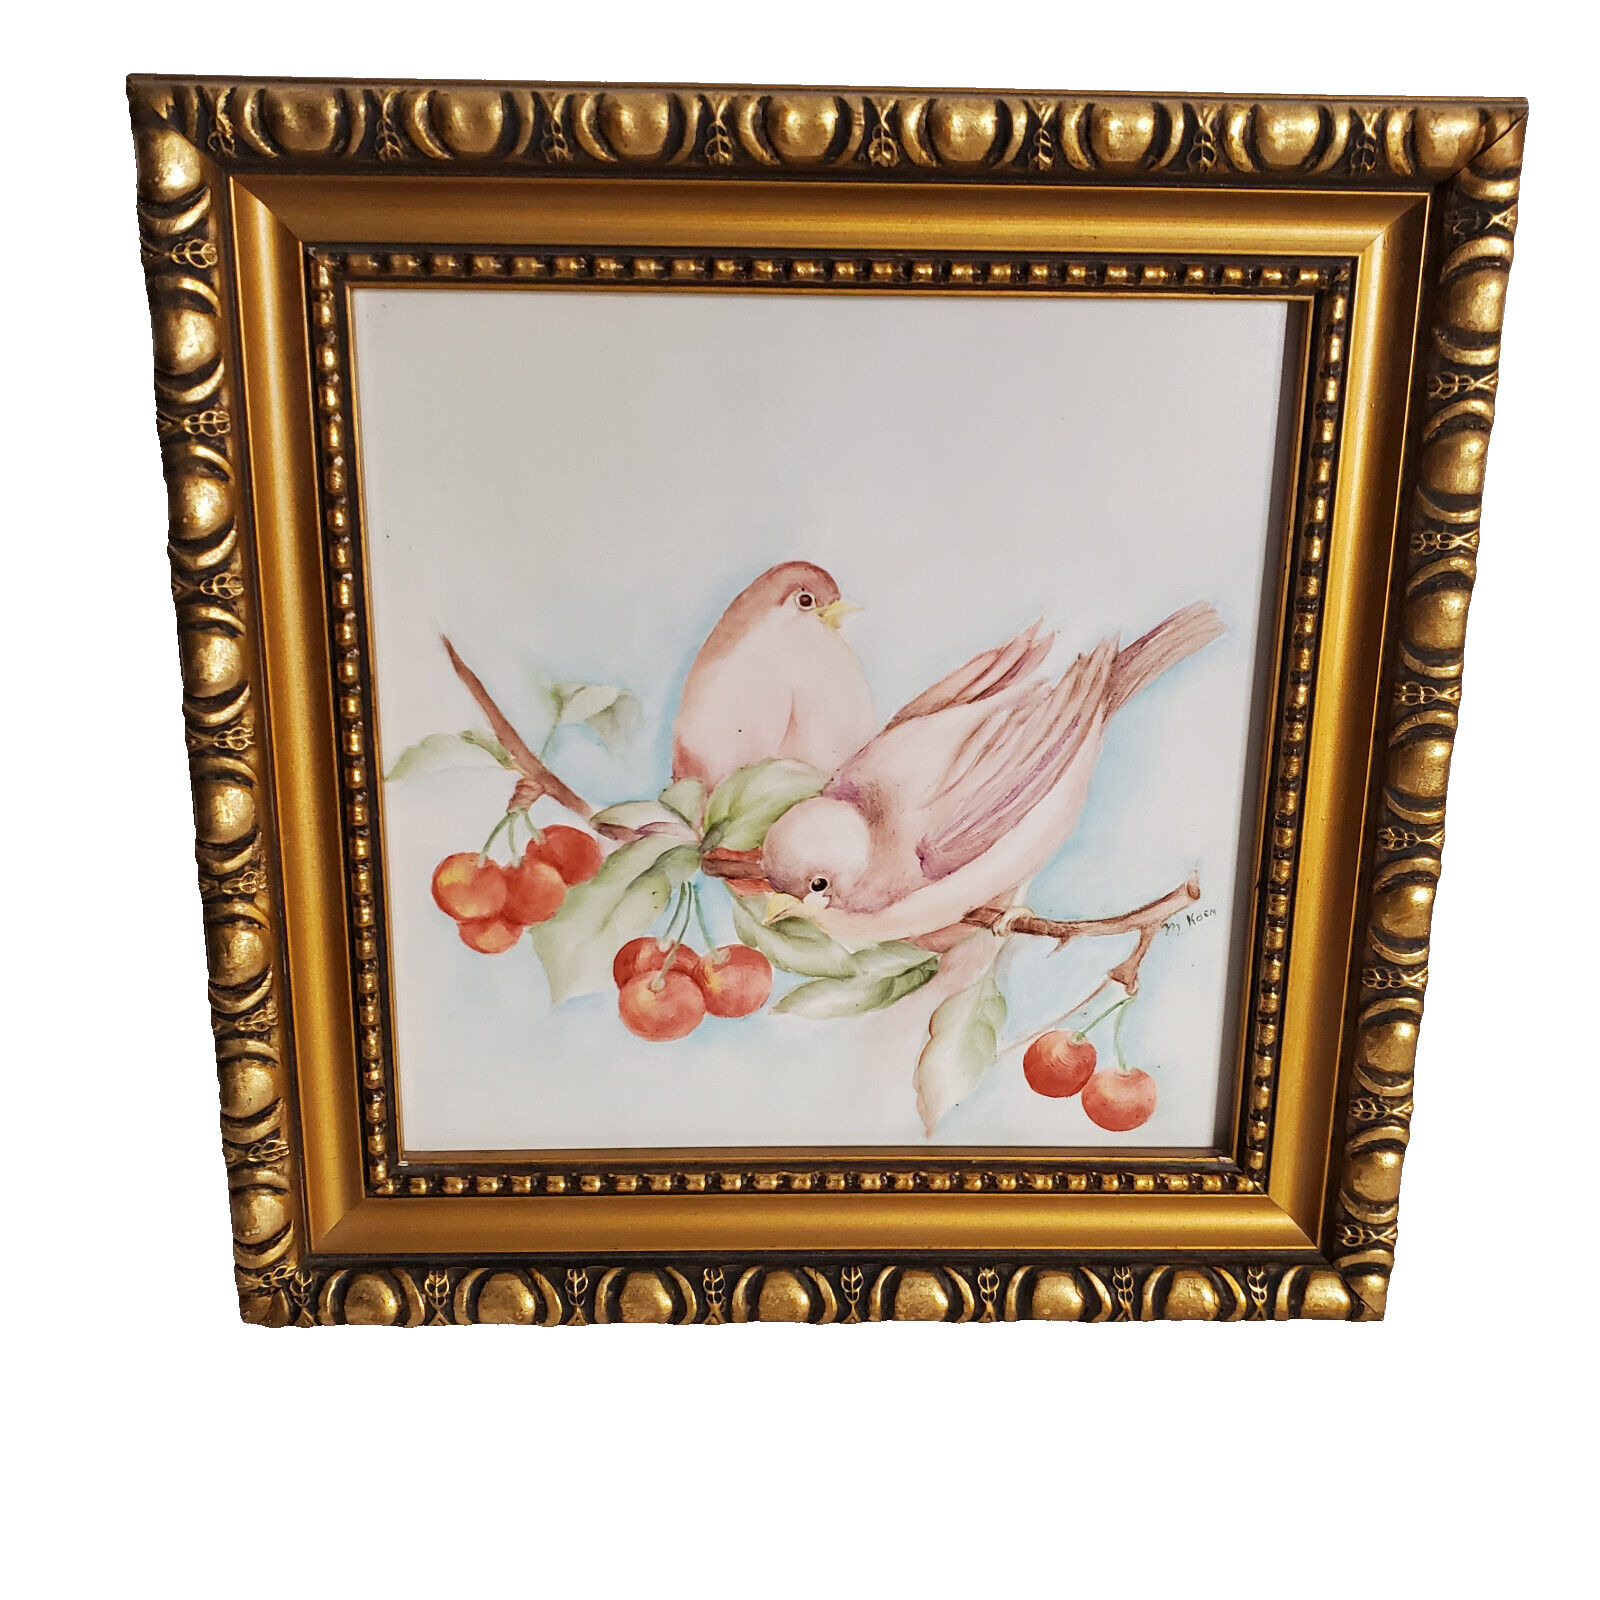 Vintage H&R Johnson Ltd Made In England Bird & Cherries Ceramic Tile Framed